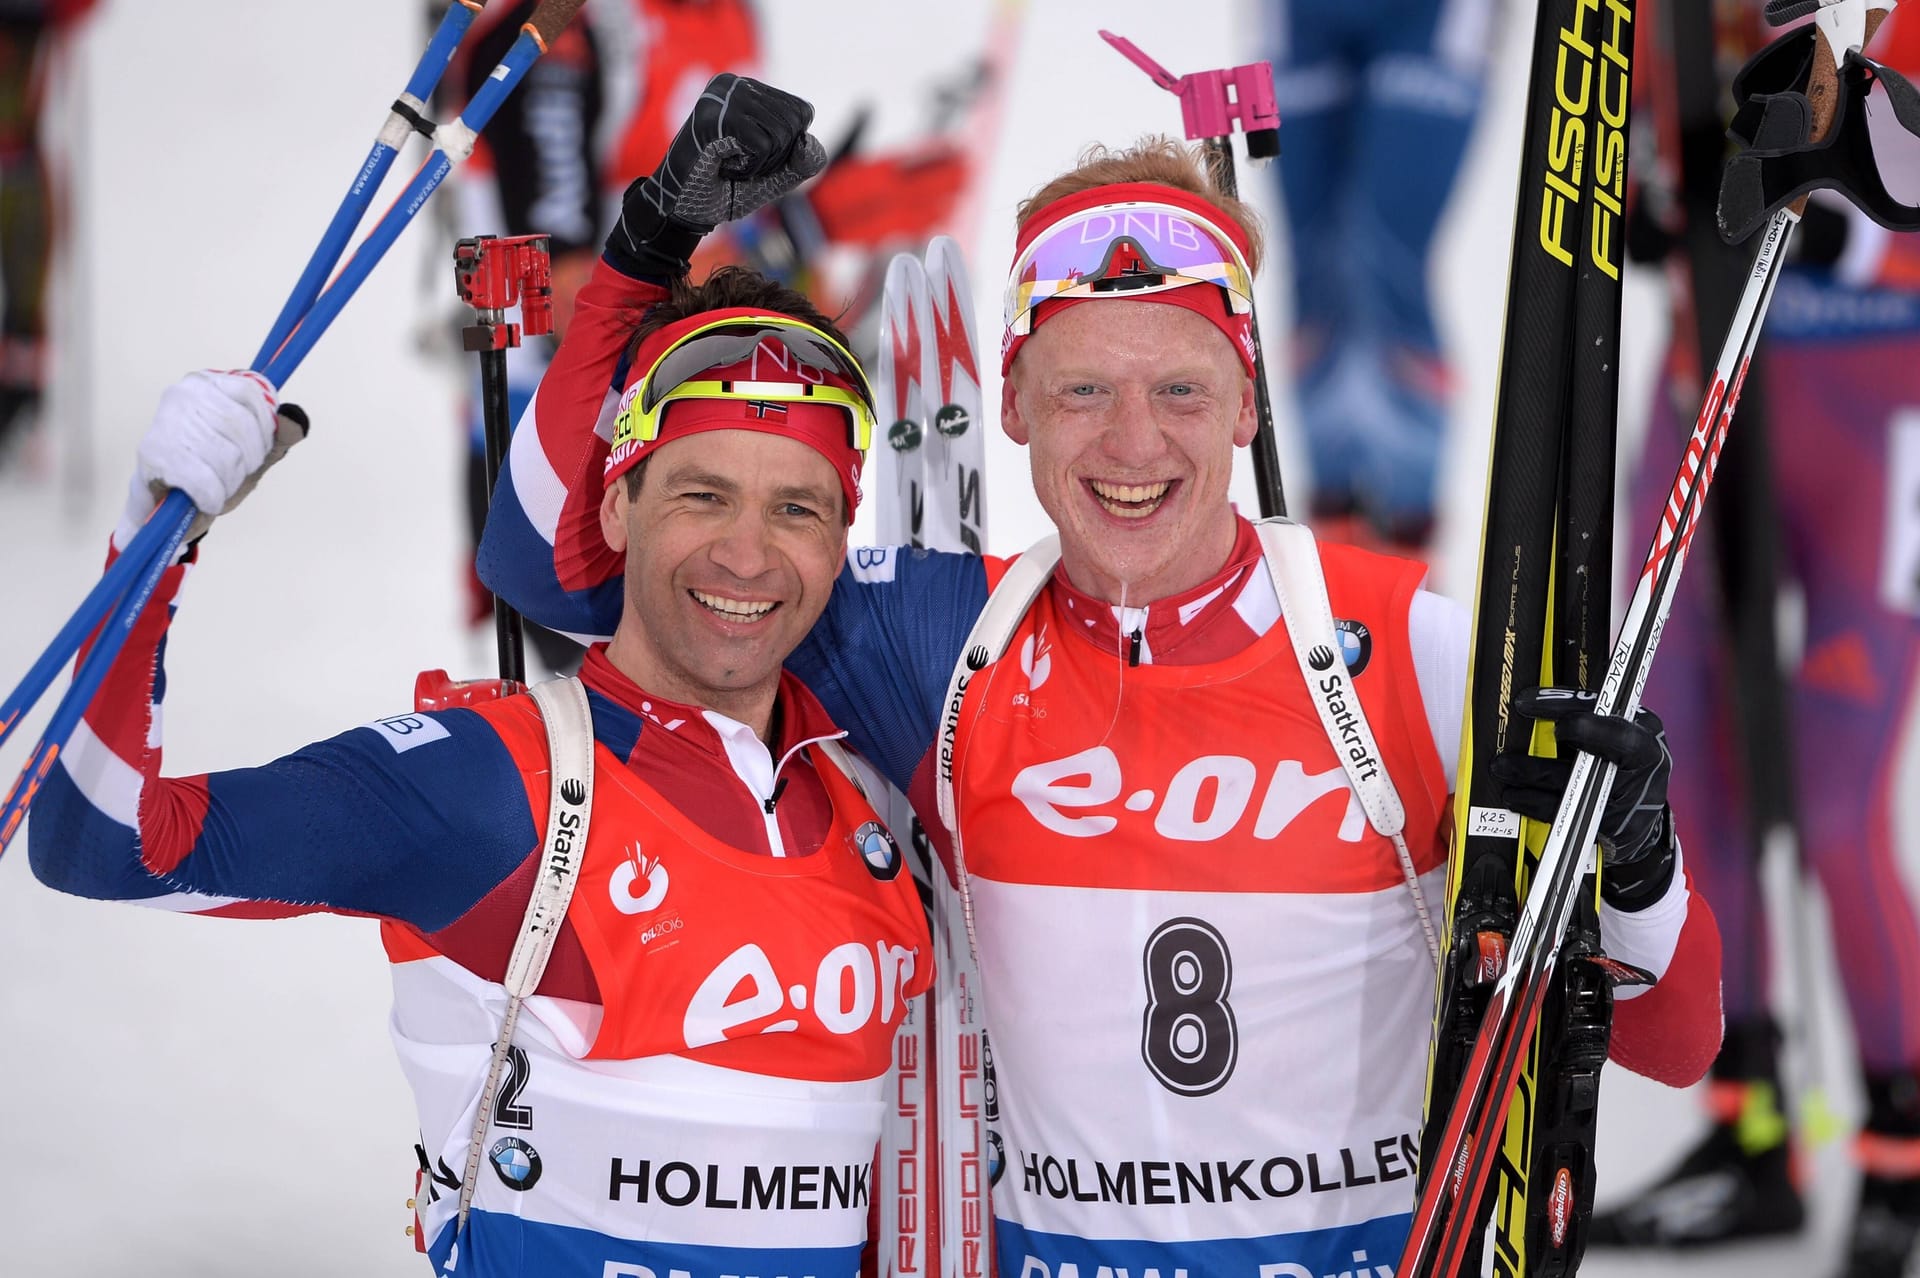 Wer ist der größte Biathlet aller Zeiten? Uschi Disl sieht Ole Einar Björndalen (l.) und Johannes Thingnes Bö (r.) mittlerweile auf einer Stufe.